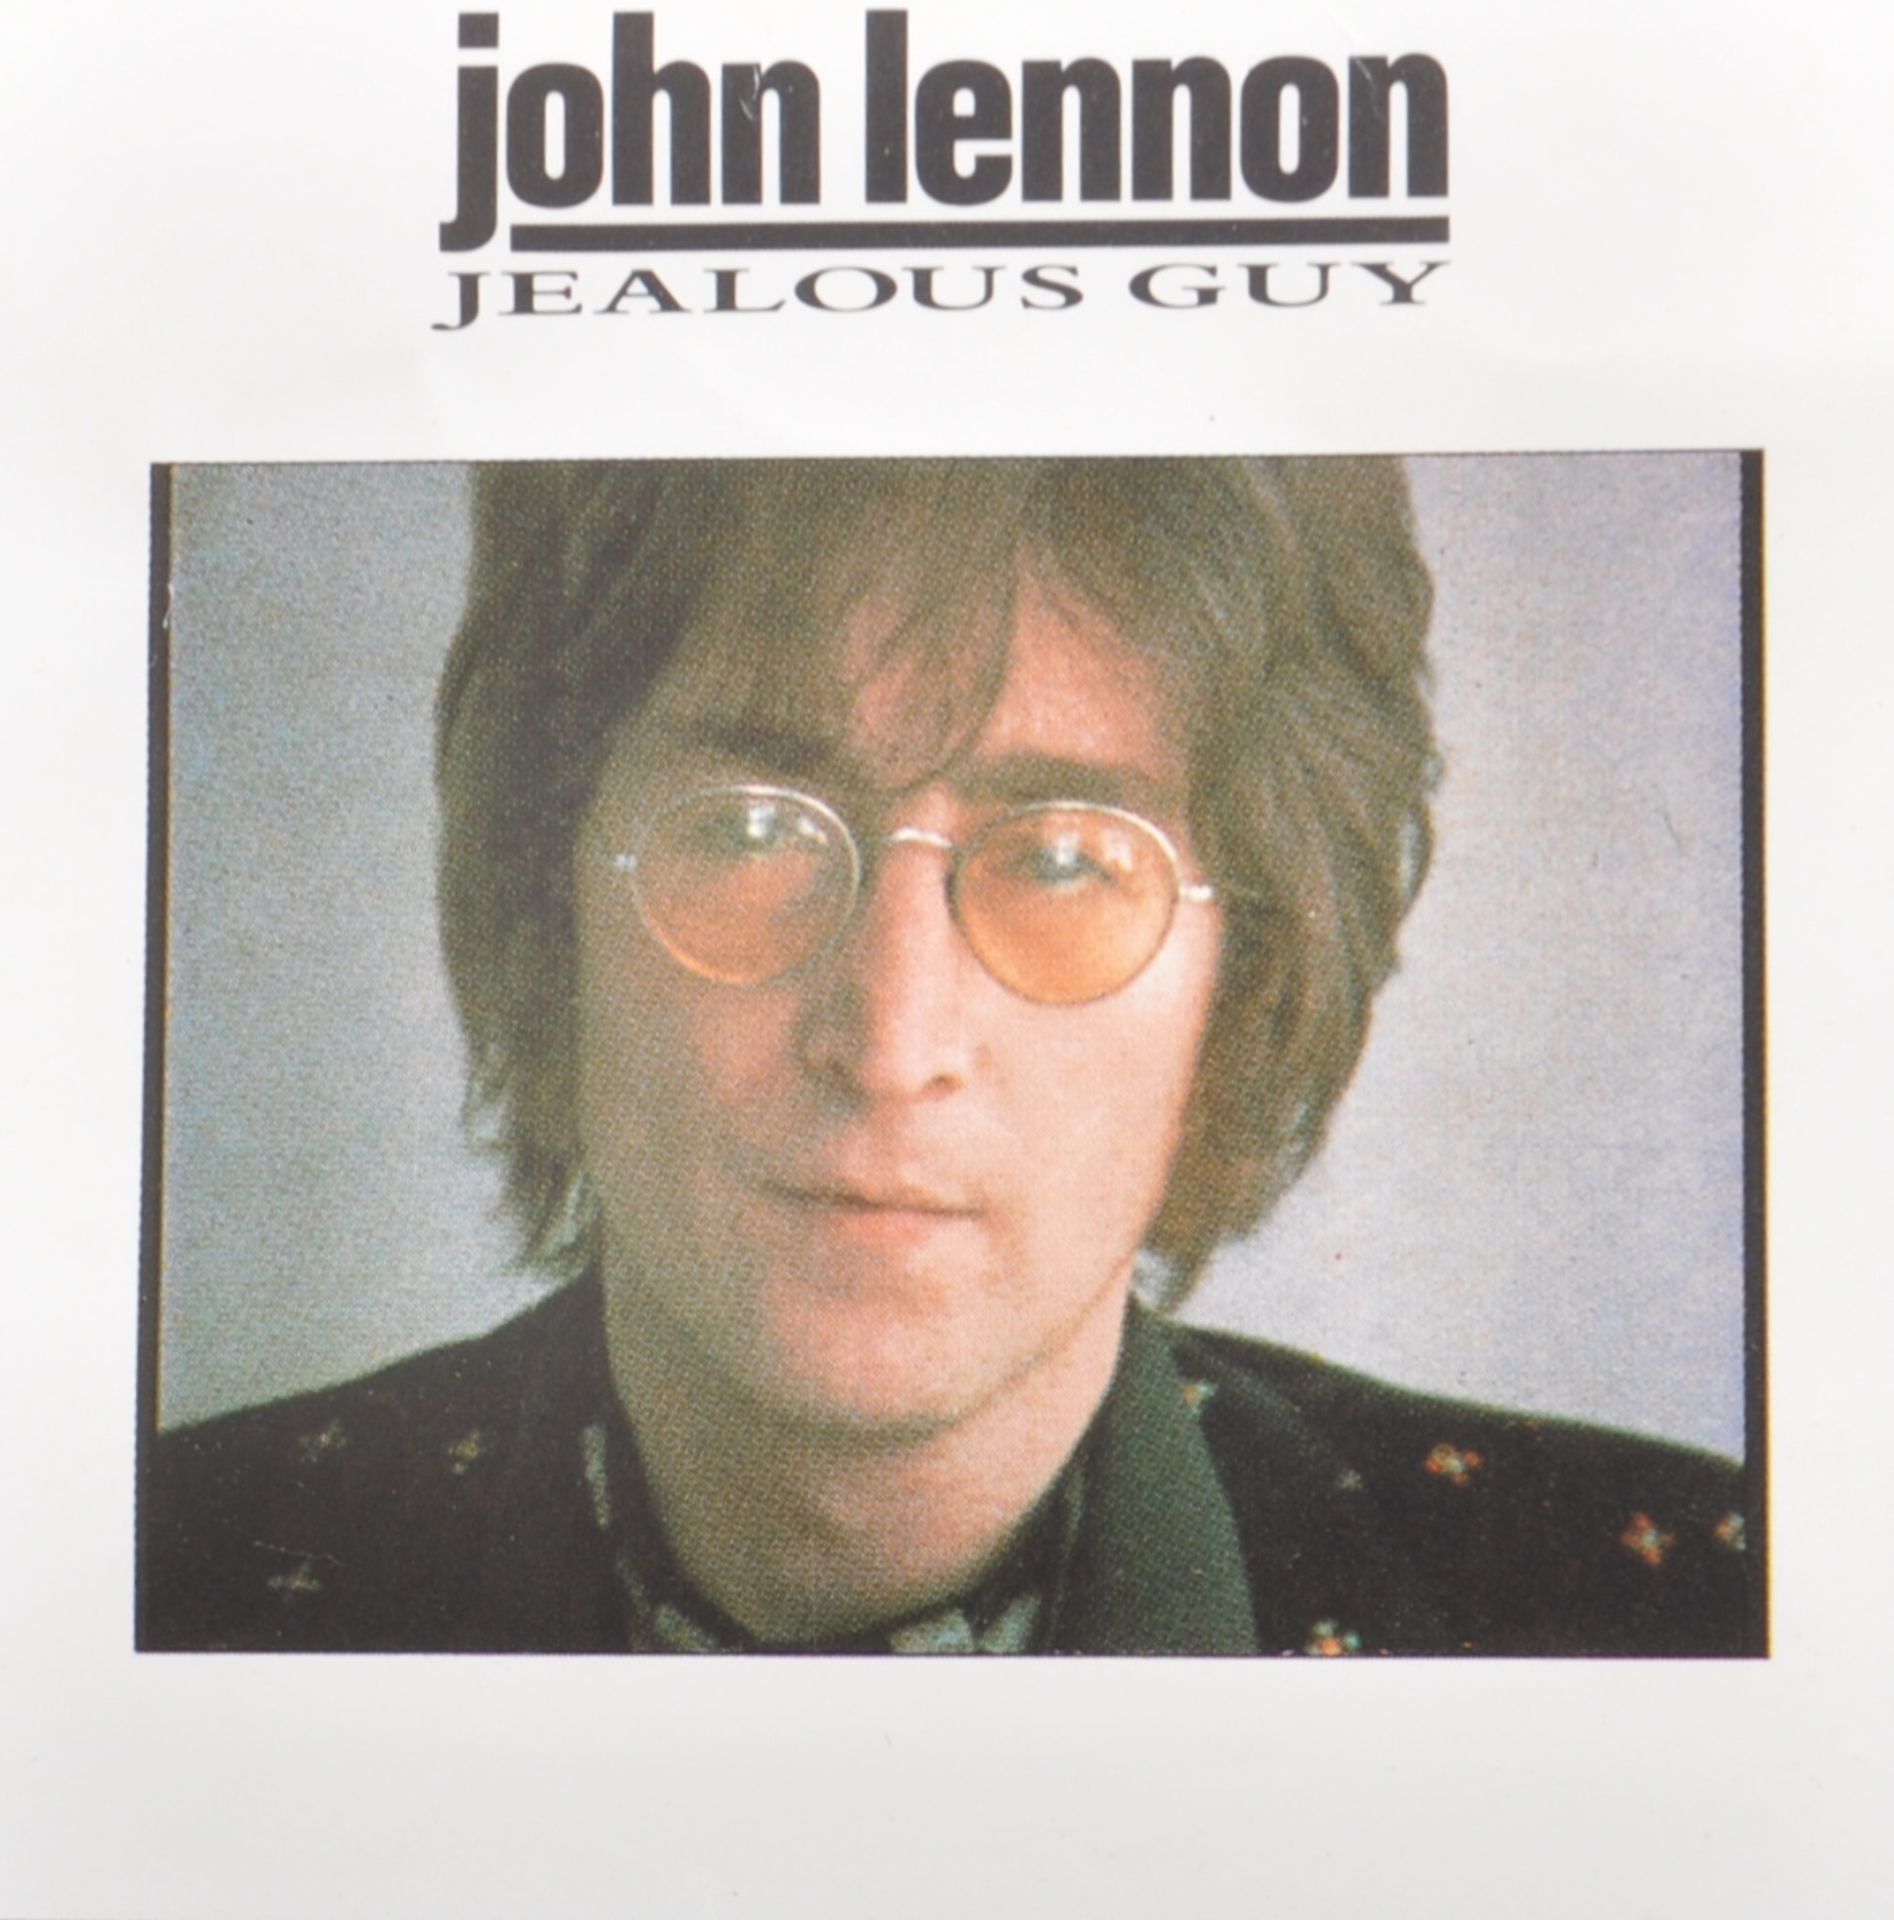 JOHN LENNON - JEALOUS GUY - VINTAGE MUSIC / MOVIE POSTER - Image 6 of 6